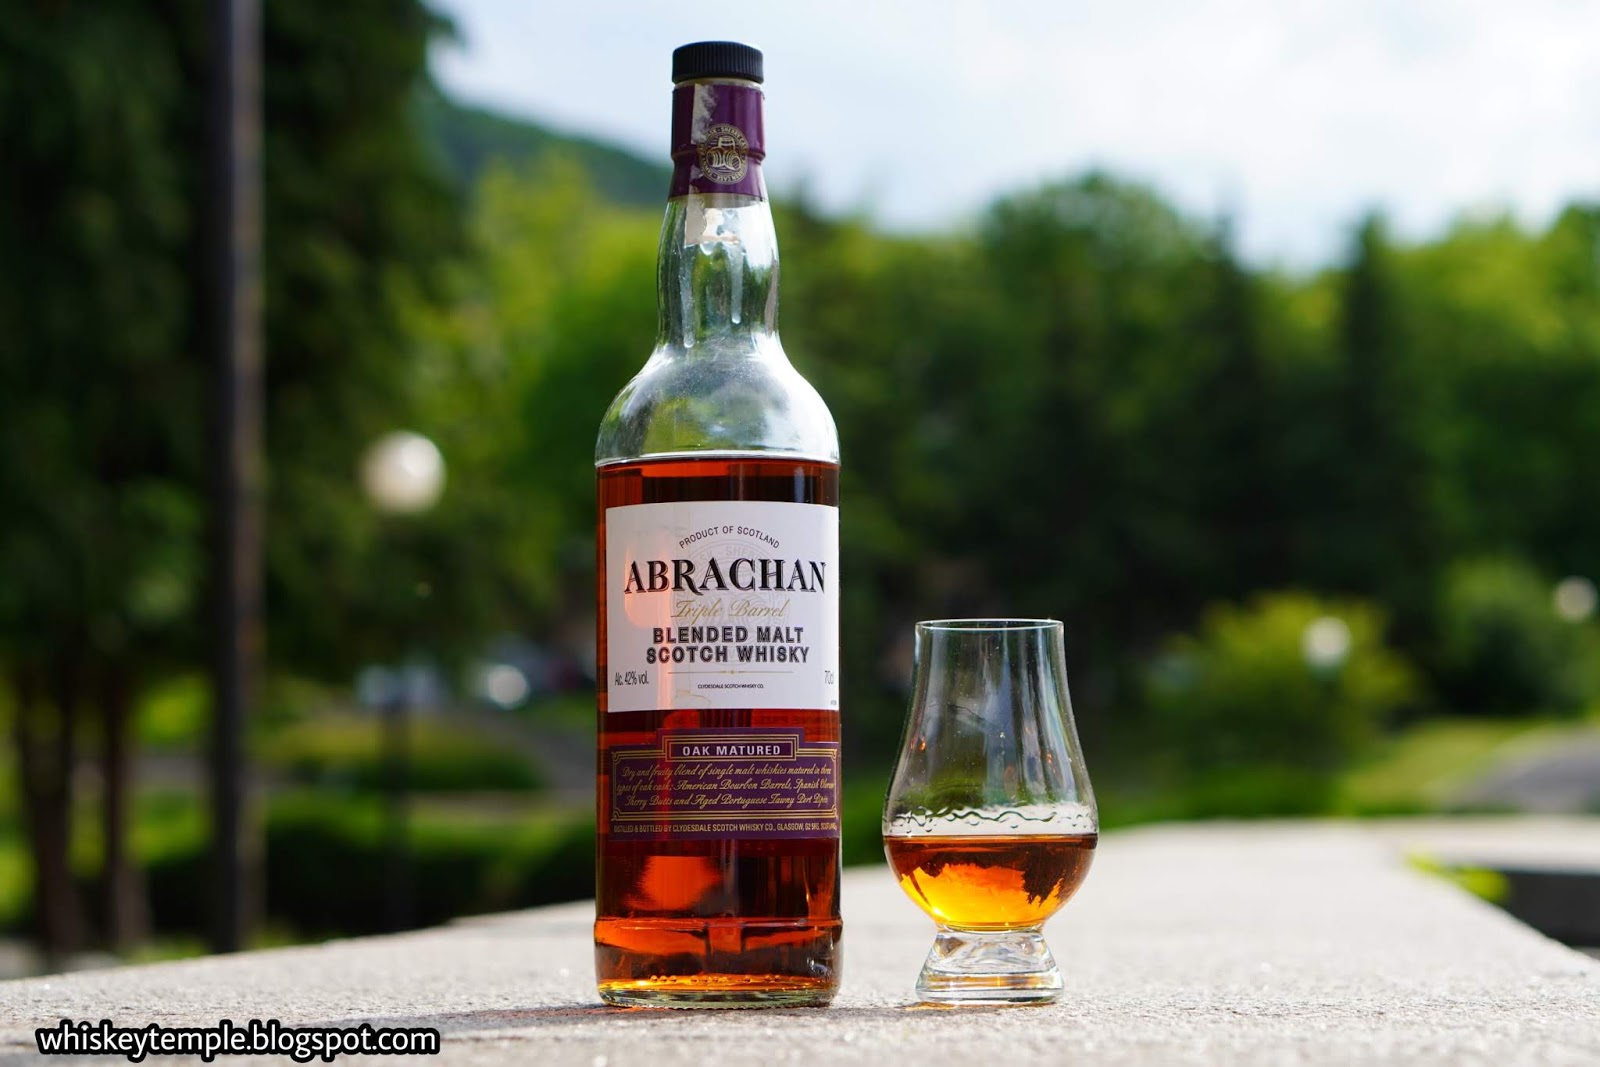 Abrachan Triple barrel blended malt whisky – Whiskeytemple